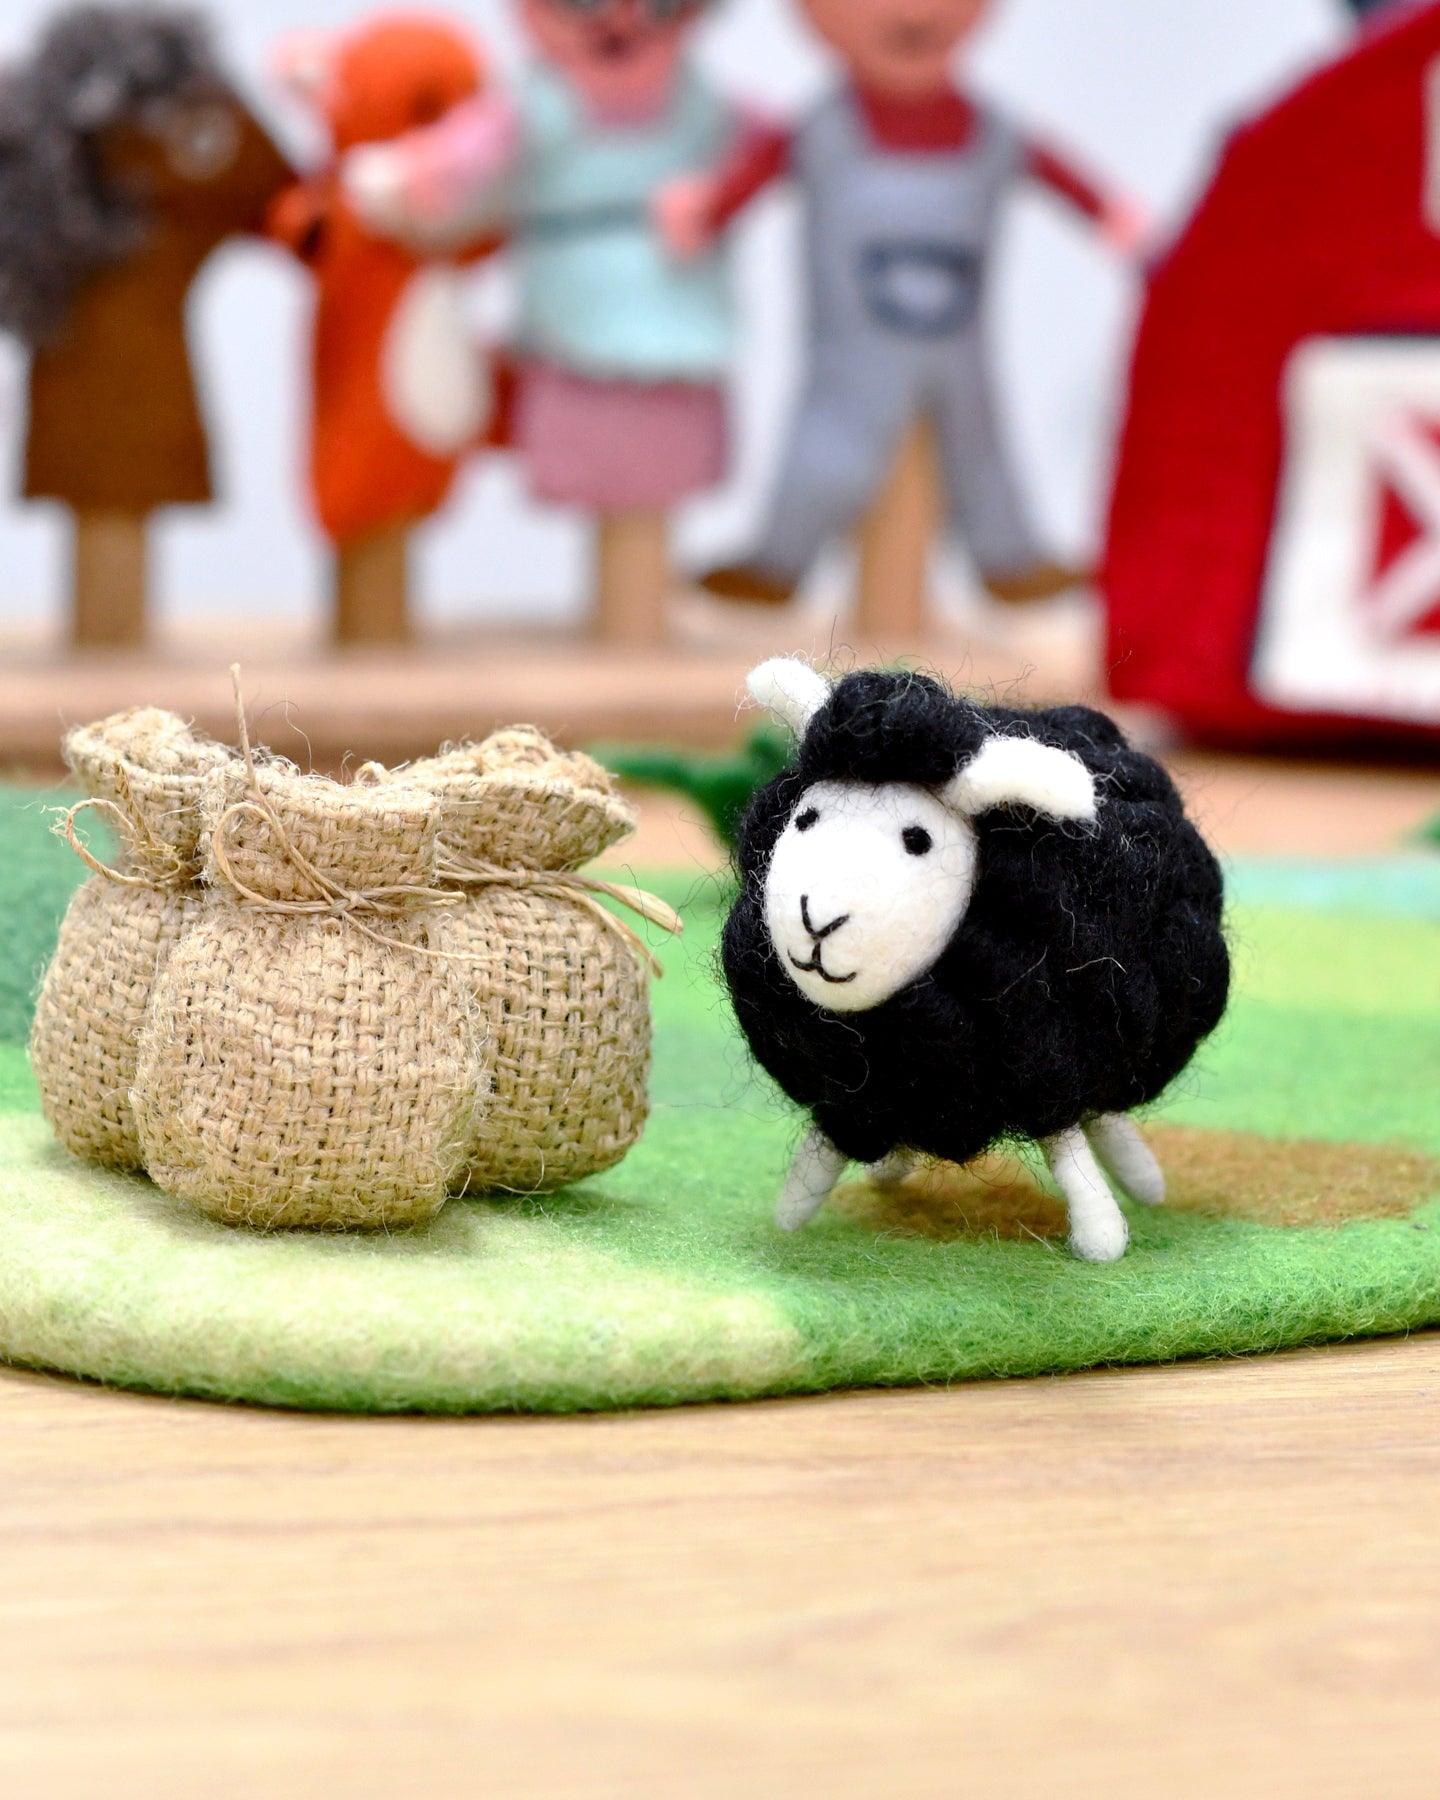 Felt Baa Baa Black Sheep Toy - Tara Treasures